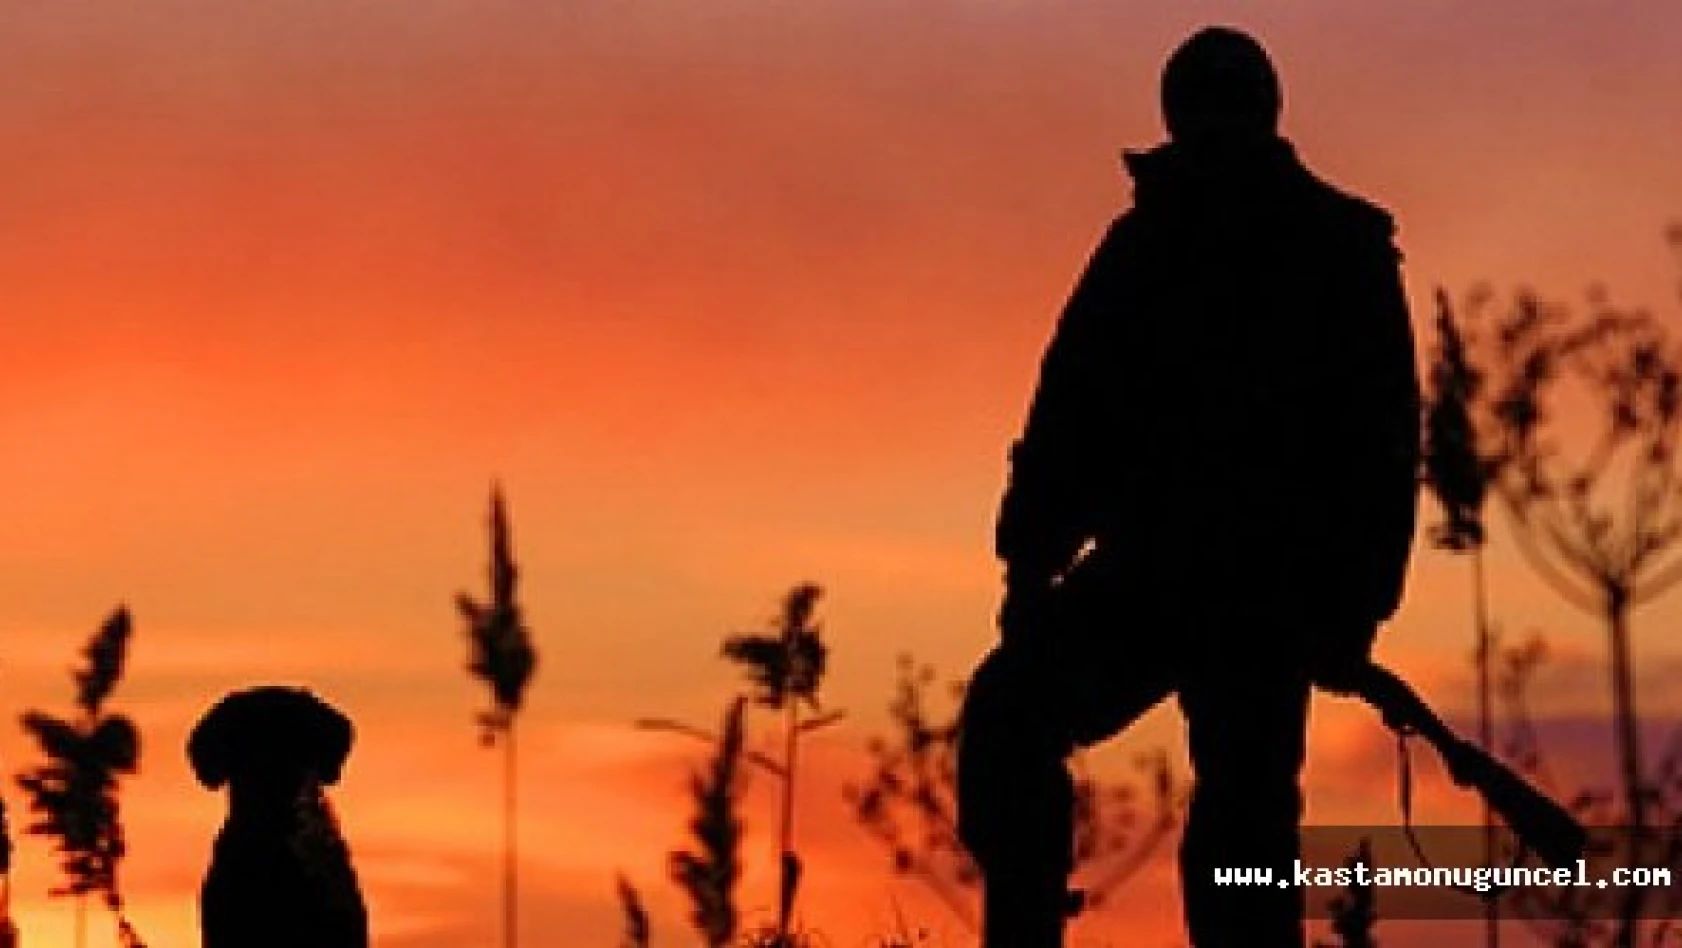 Kastamonu'da Avcı Eğitim Kursu Açılacak